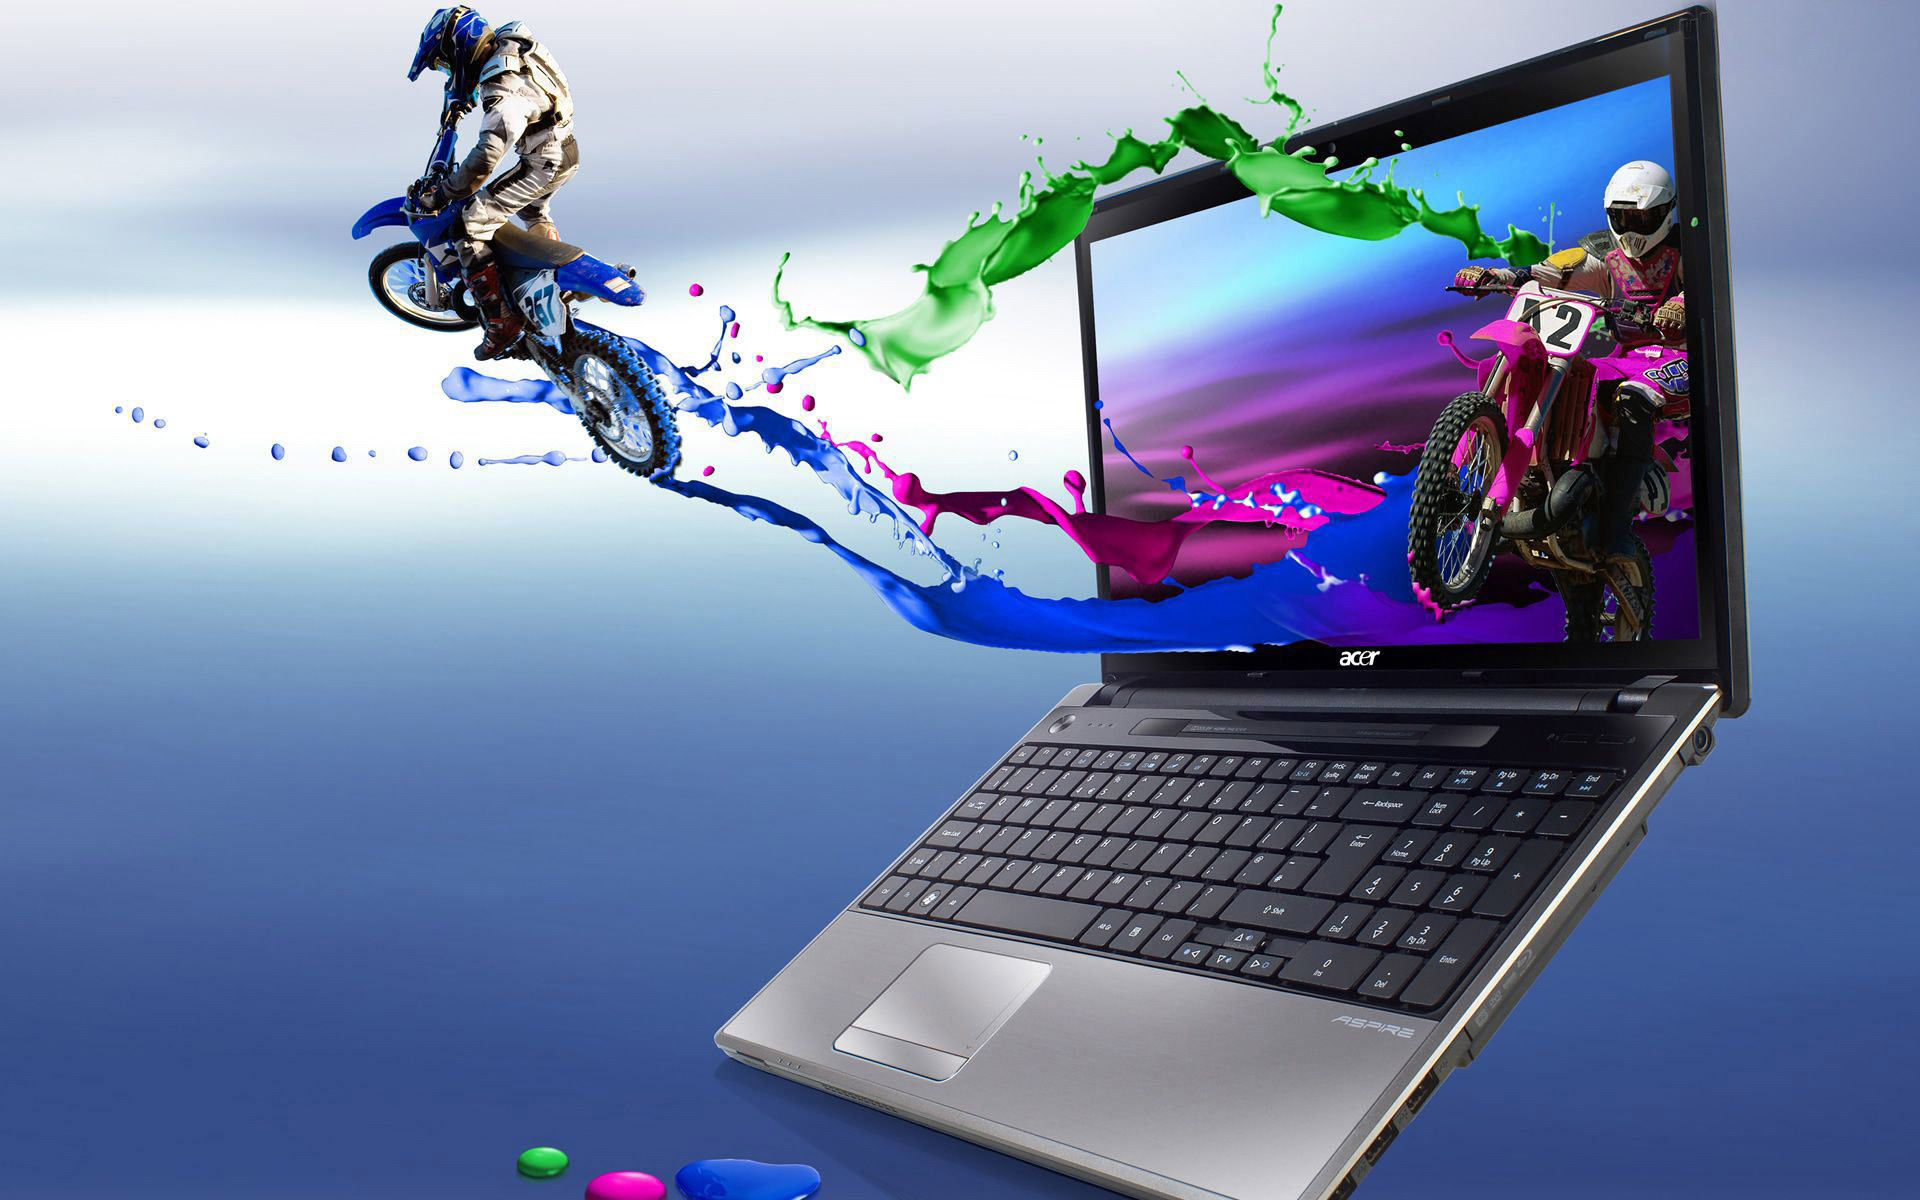 Với ảnh nền laptop Full HD này, bạn sẽ được sống trong một thế giới ảo đầy màu sắc và sống động. Hãy tải xuống ngay để thủy chung lưu giữ những khoảnh khắc đẹp tuyệt vời trên thiết bị của bạn.